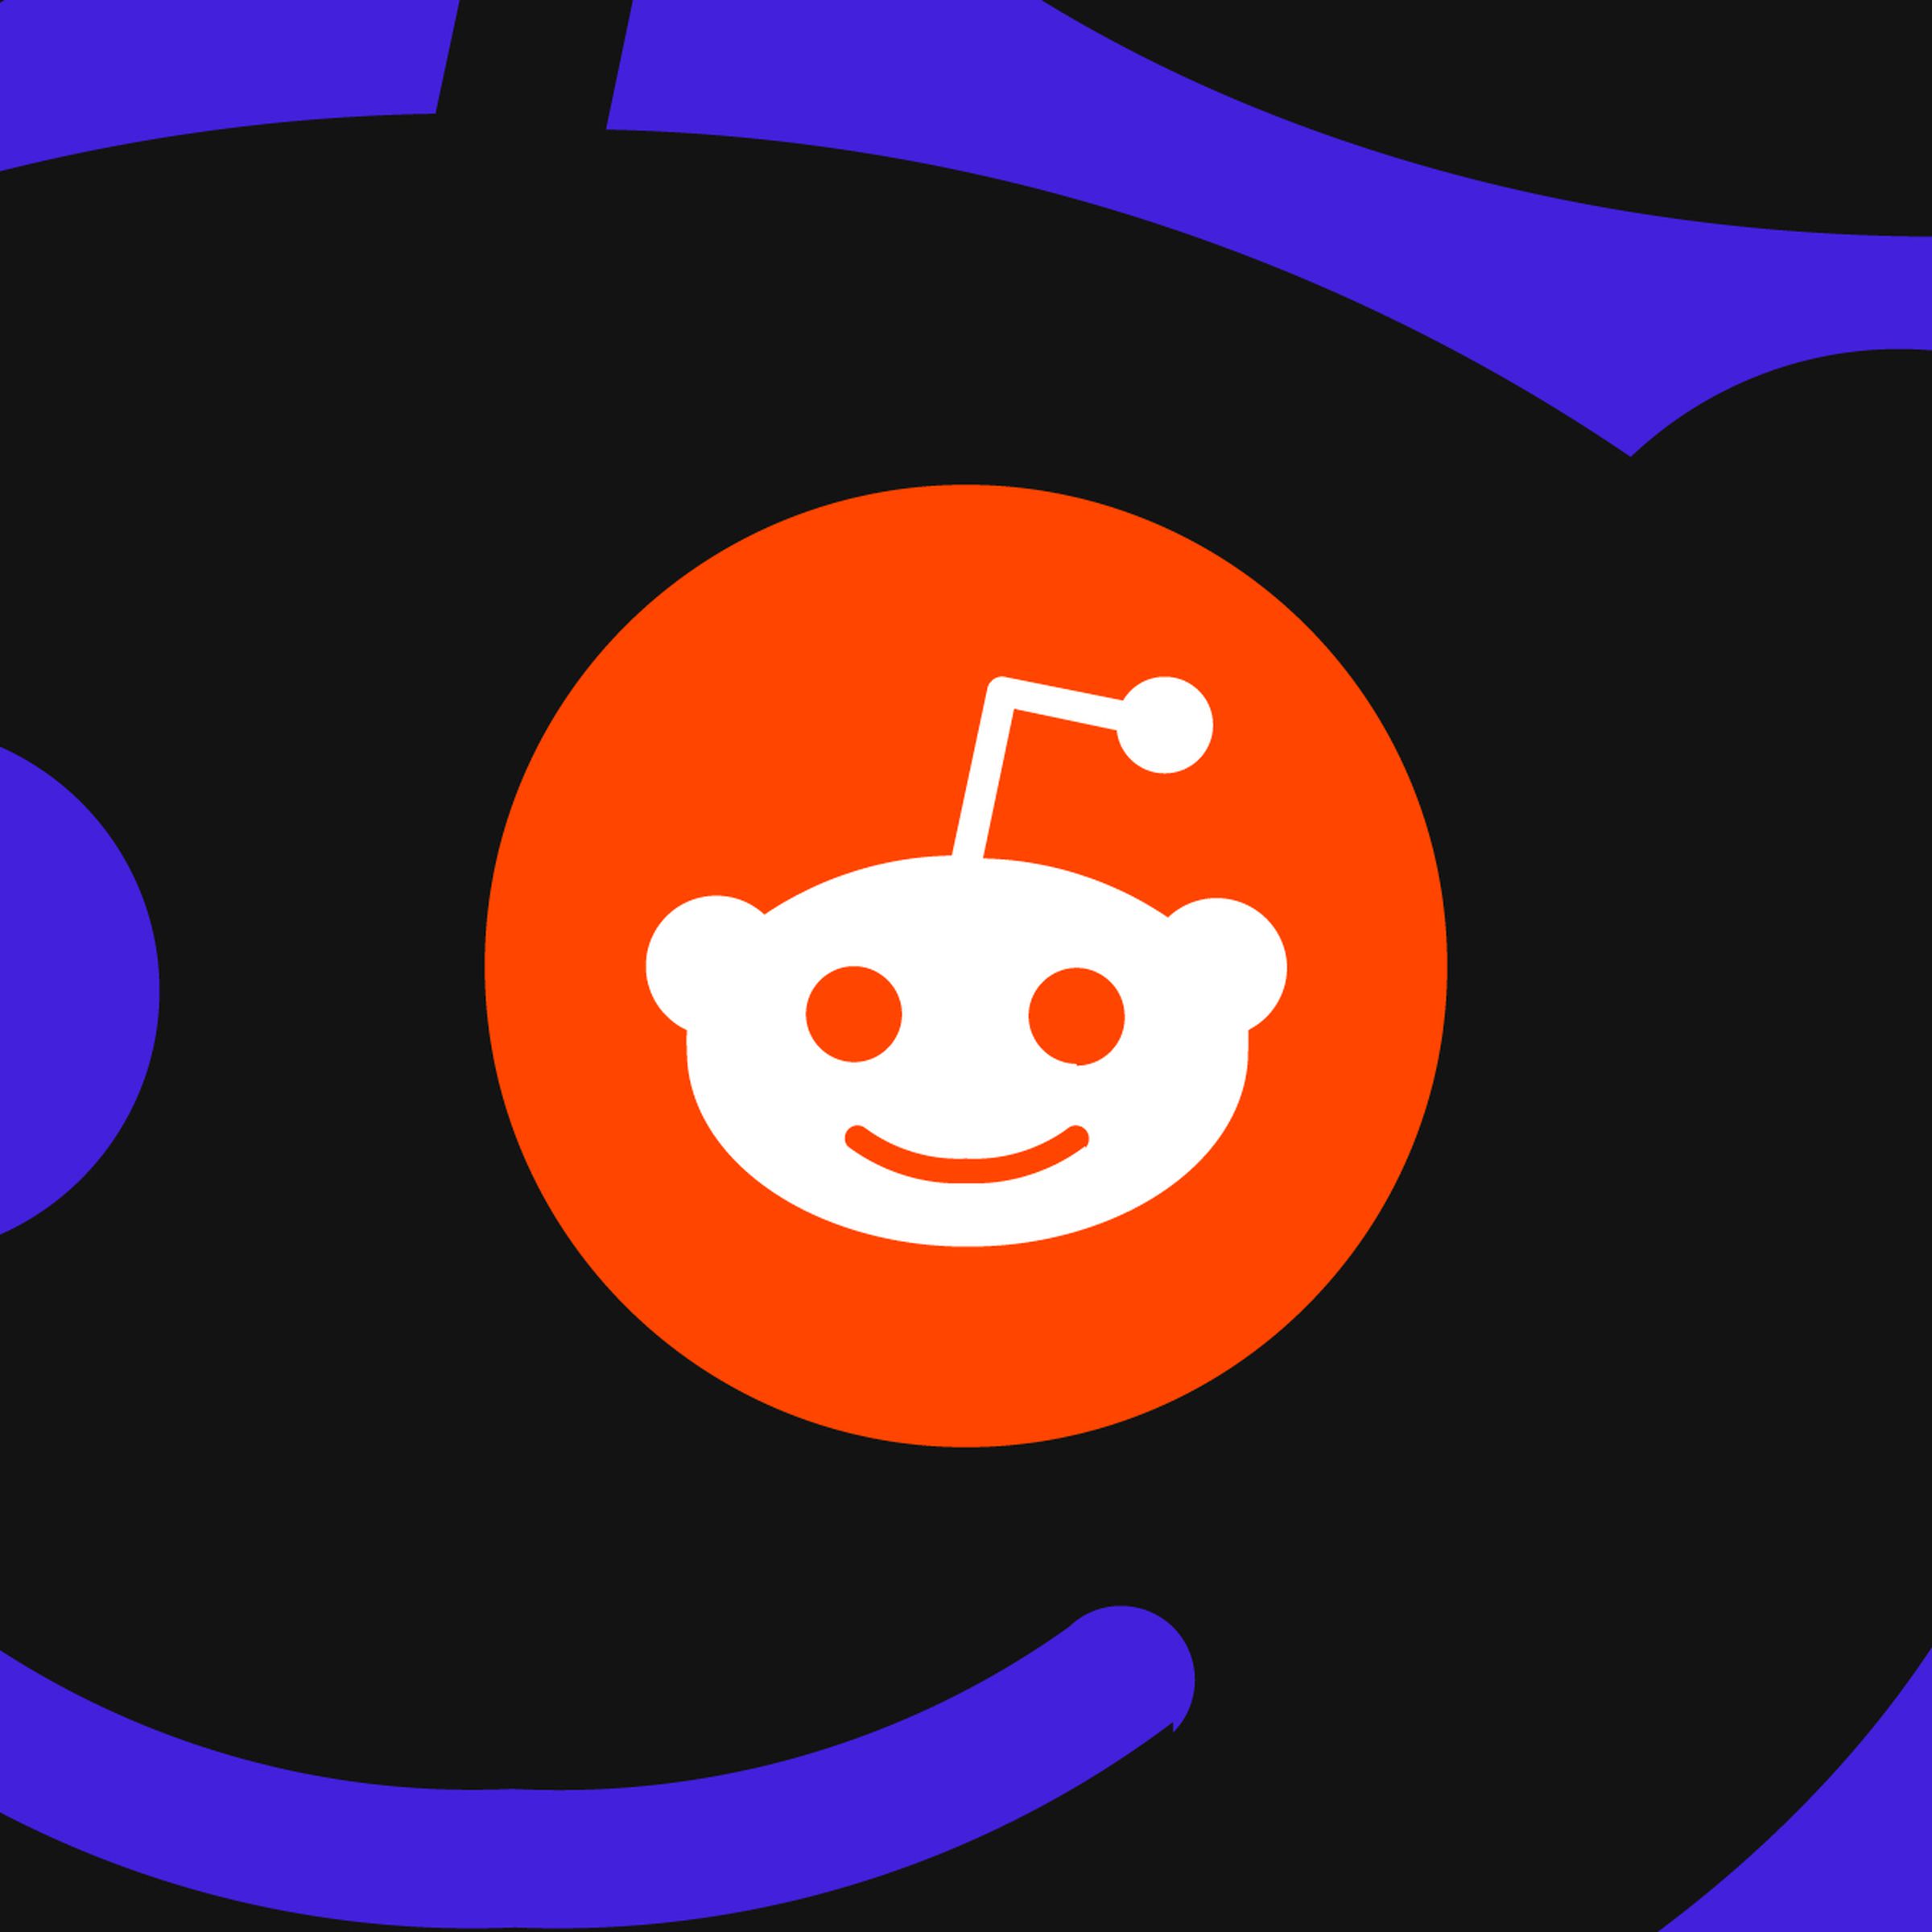 Reddit logo shown in layers